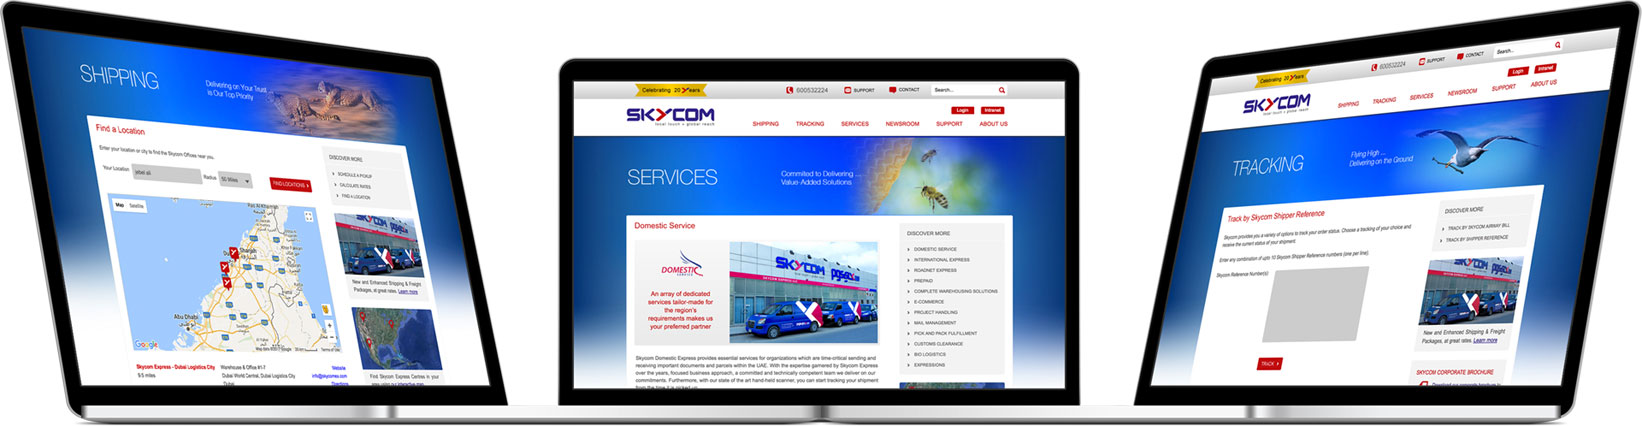 Skycom Express Corporate Website